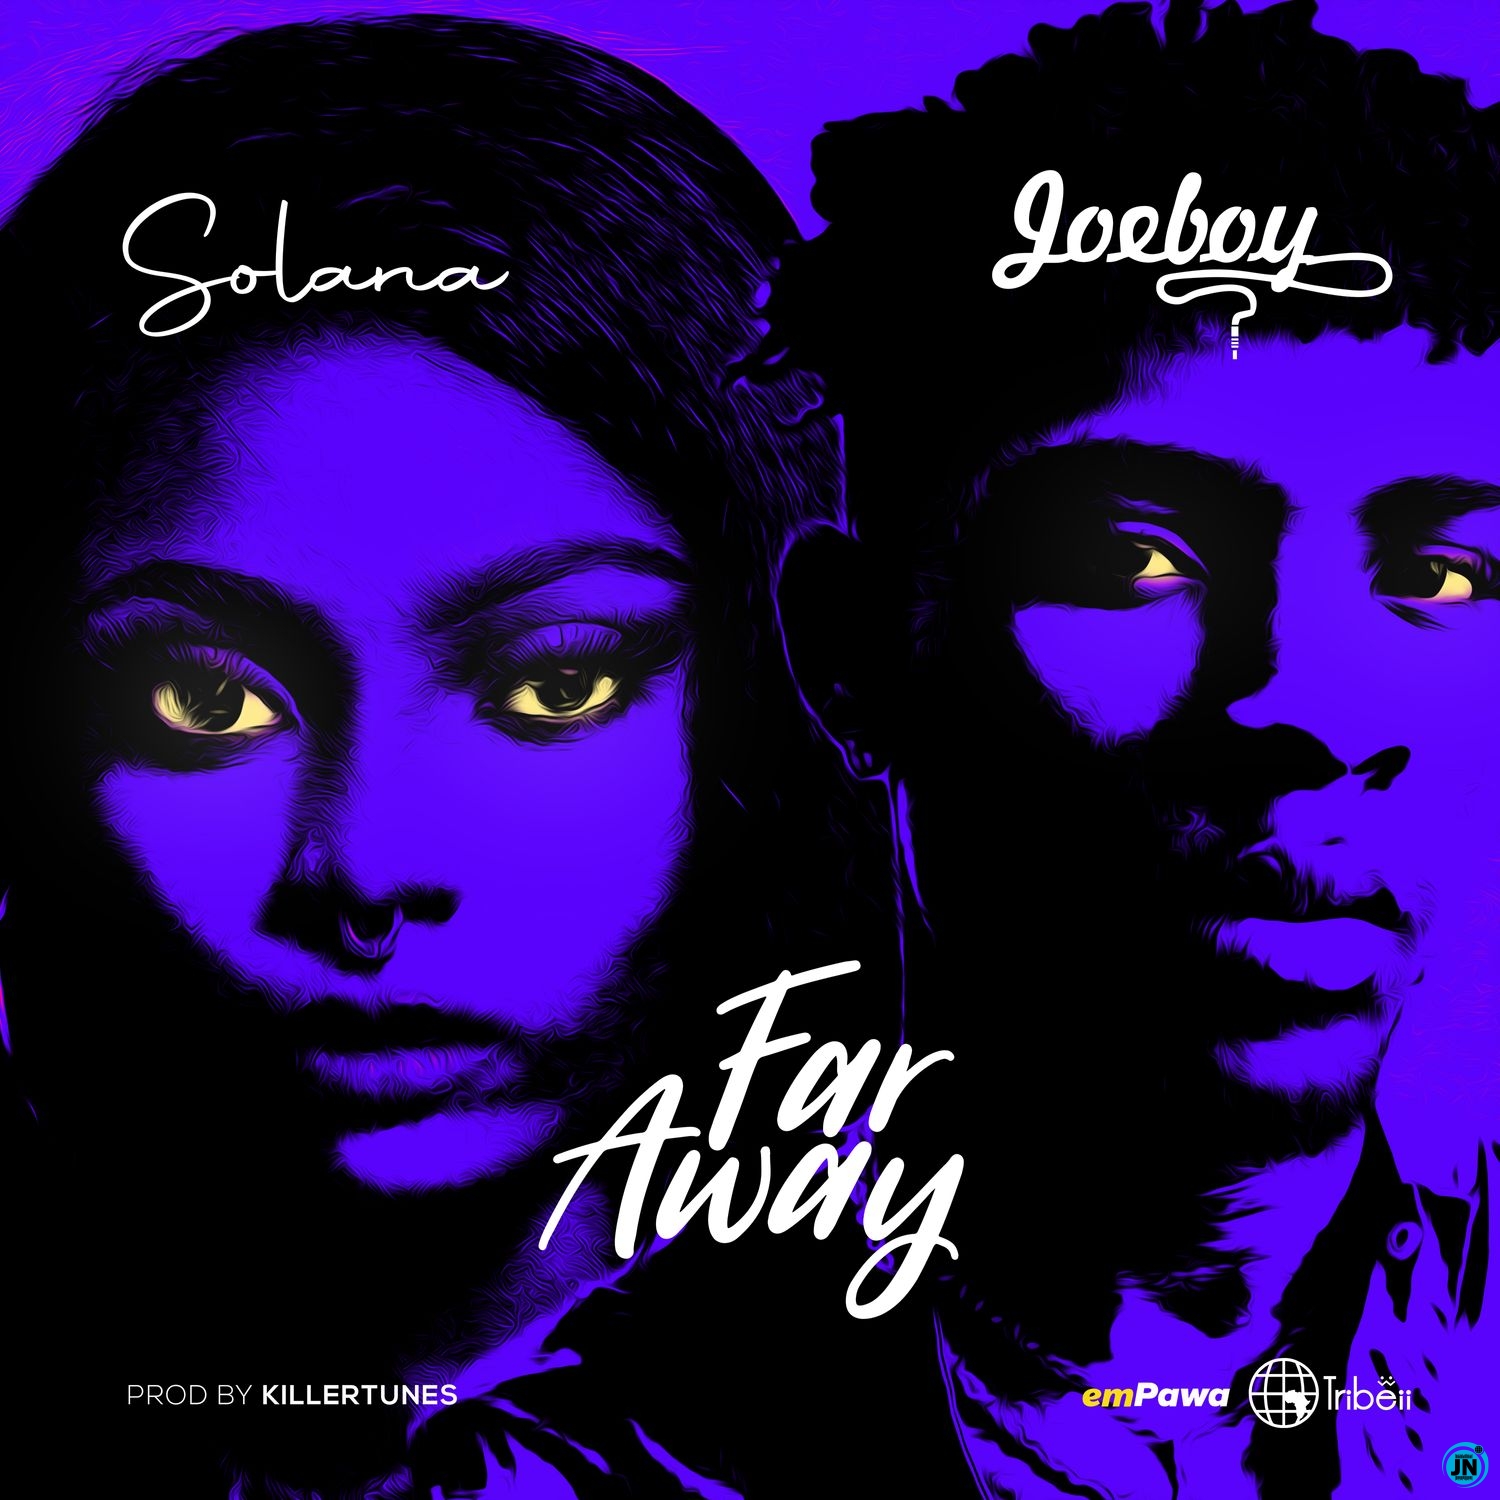 Solana - Far Away ft. Joeboy  Mp3 Download lyrics